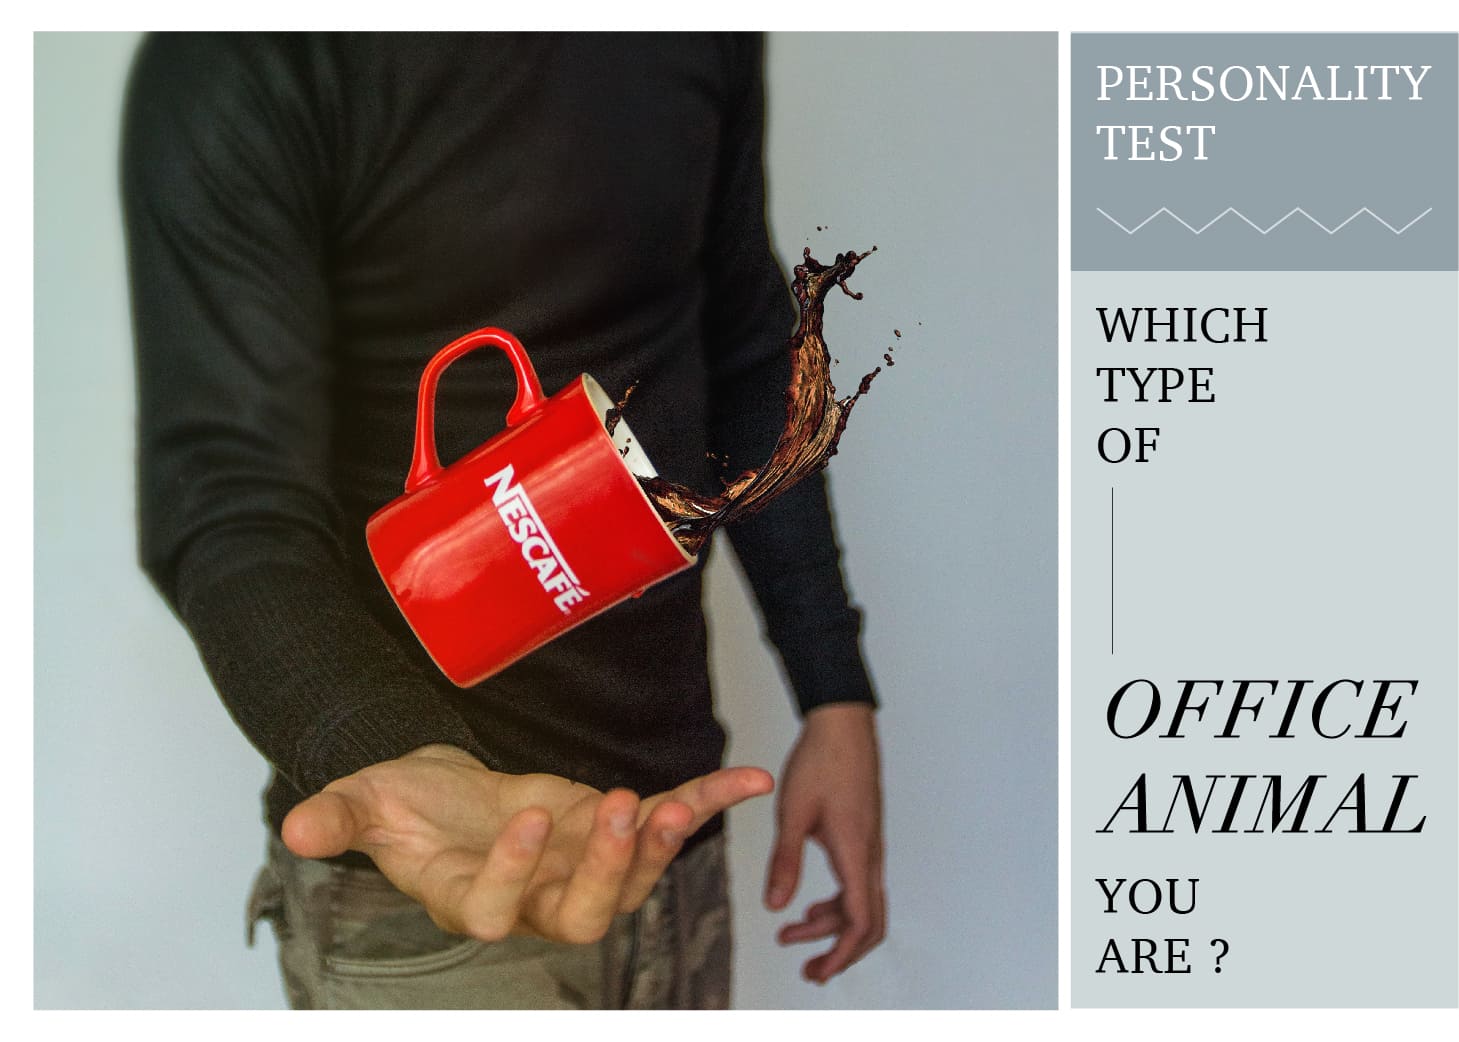 心理測驗／咖啡倒了！從1杯咖啡分析4種危機處理風格 — 職場動物型人格心理學[Personality Test] Which Type of "Office Animal" You Are?